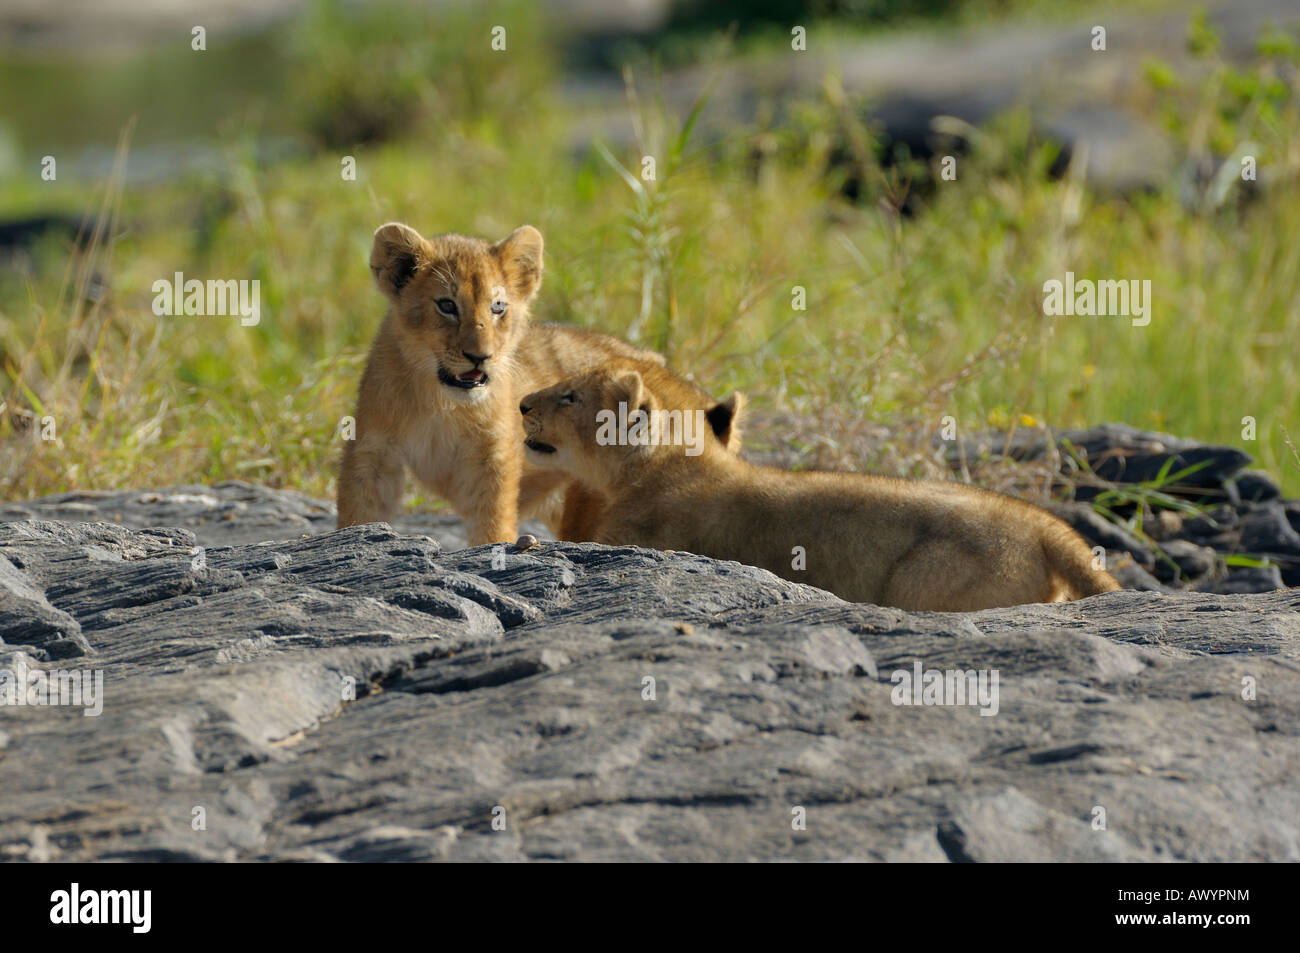 Lion cub, Masai Mara, Kenya Banque D'Images